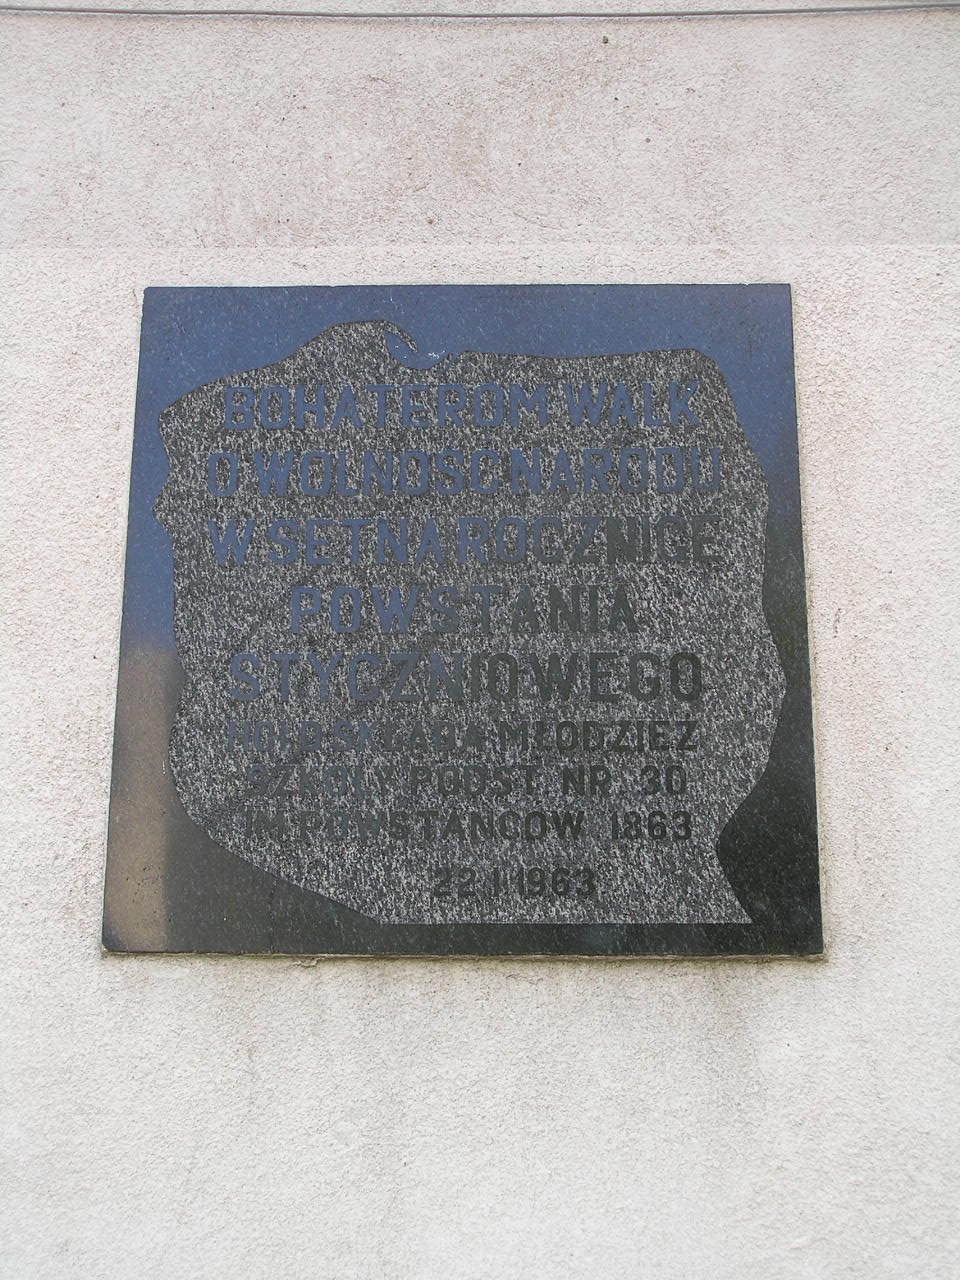 Tablice upamiętniającą Powstanie Styczniowe 1863 na Kawęczyńskiej 2 w Warszawie